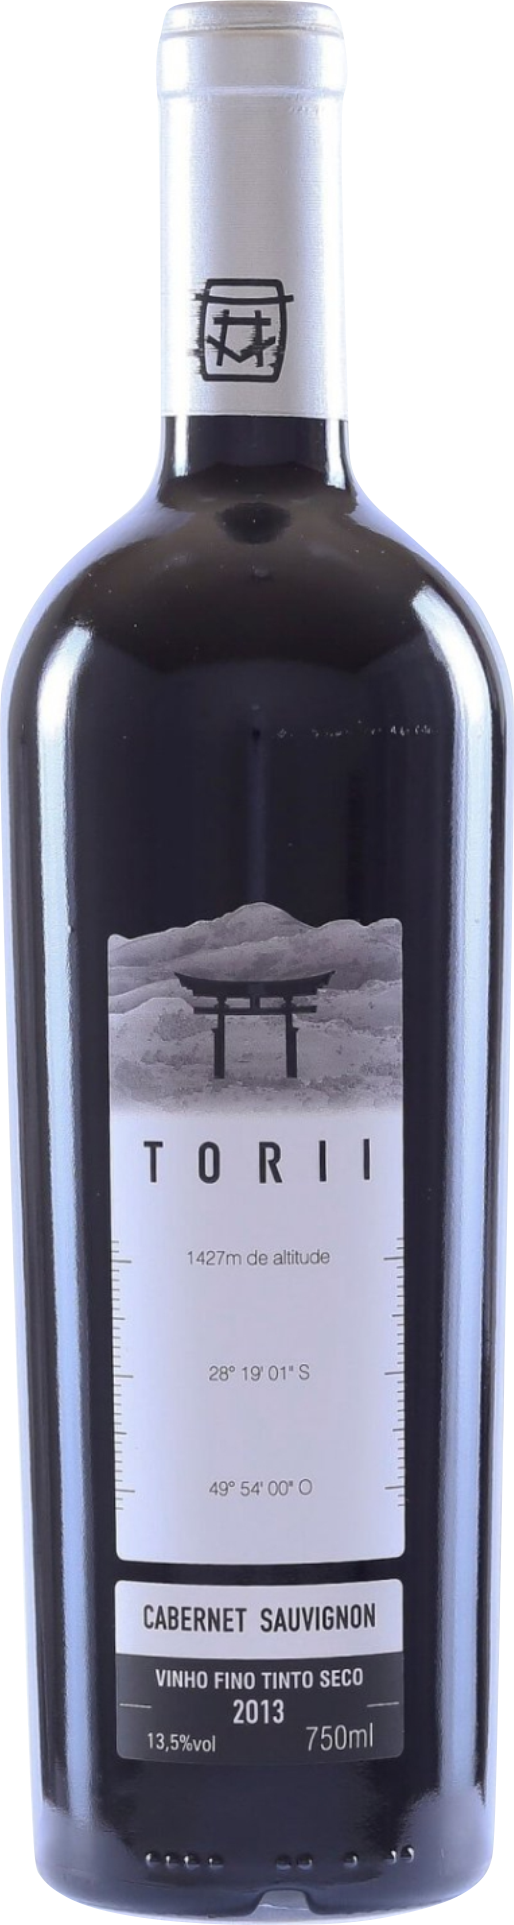 Vinho Torii cabernet sauvignon 2017 top